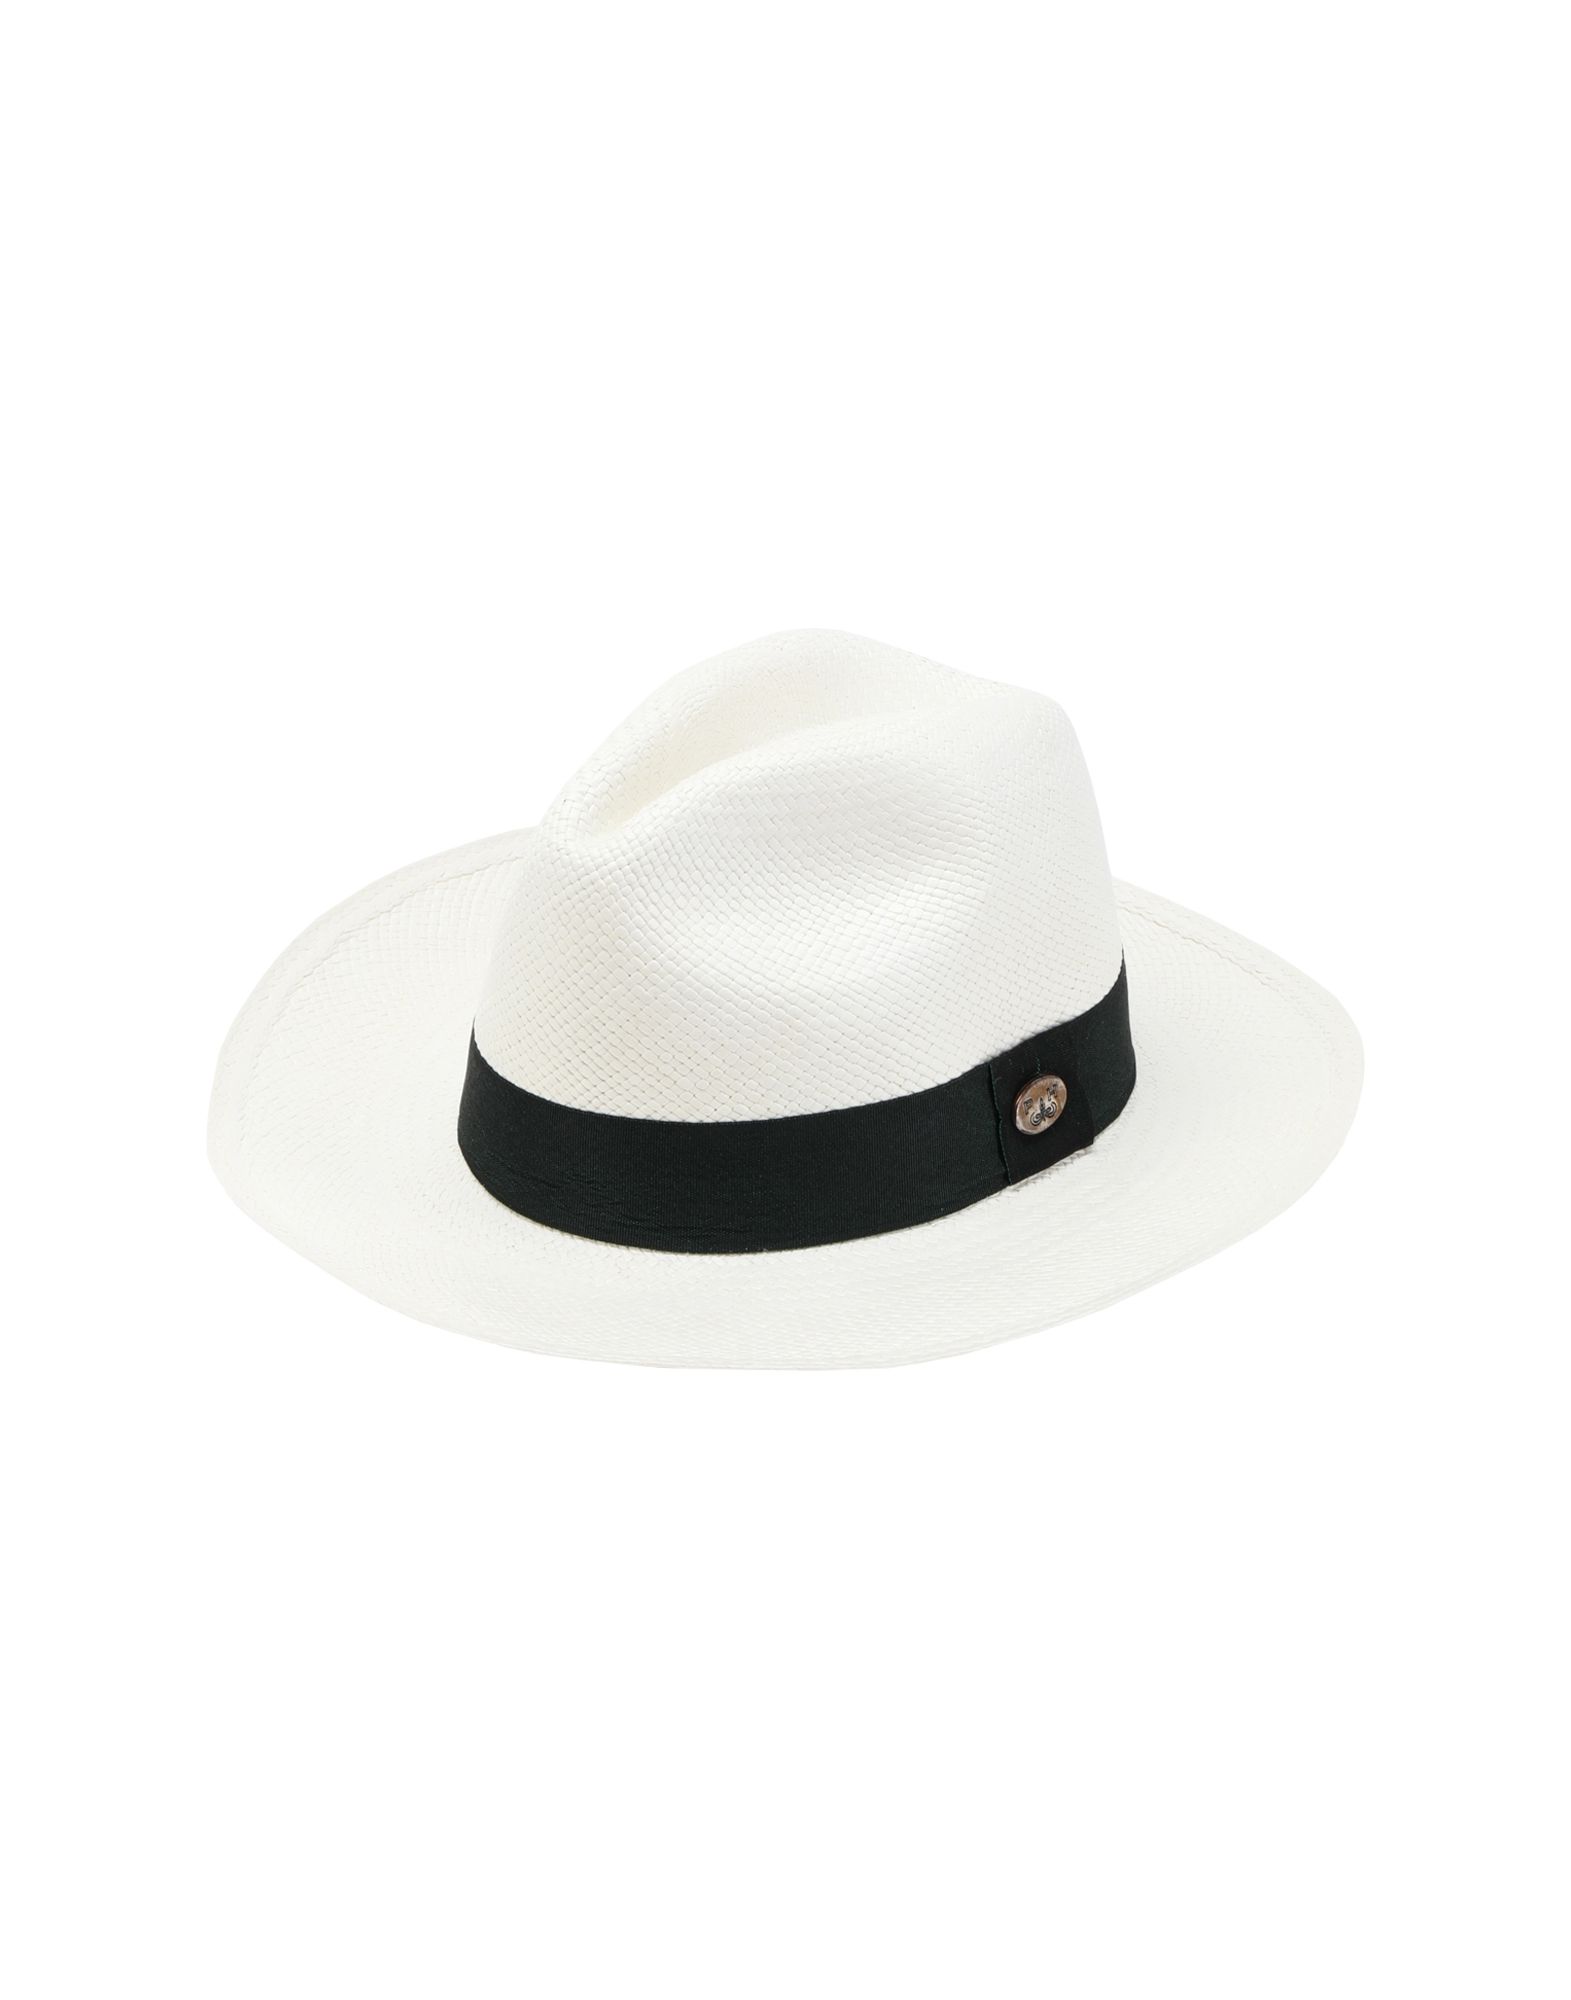 《セール開催中》PANAMA HATTERS Unisex 帽子 ホワイト L ストロー 100% EMPORIO PANAMA CLASSIC WHITE IRIDESCENT GREEN +TRAVEL BAG